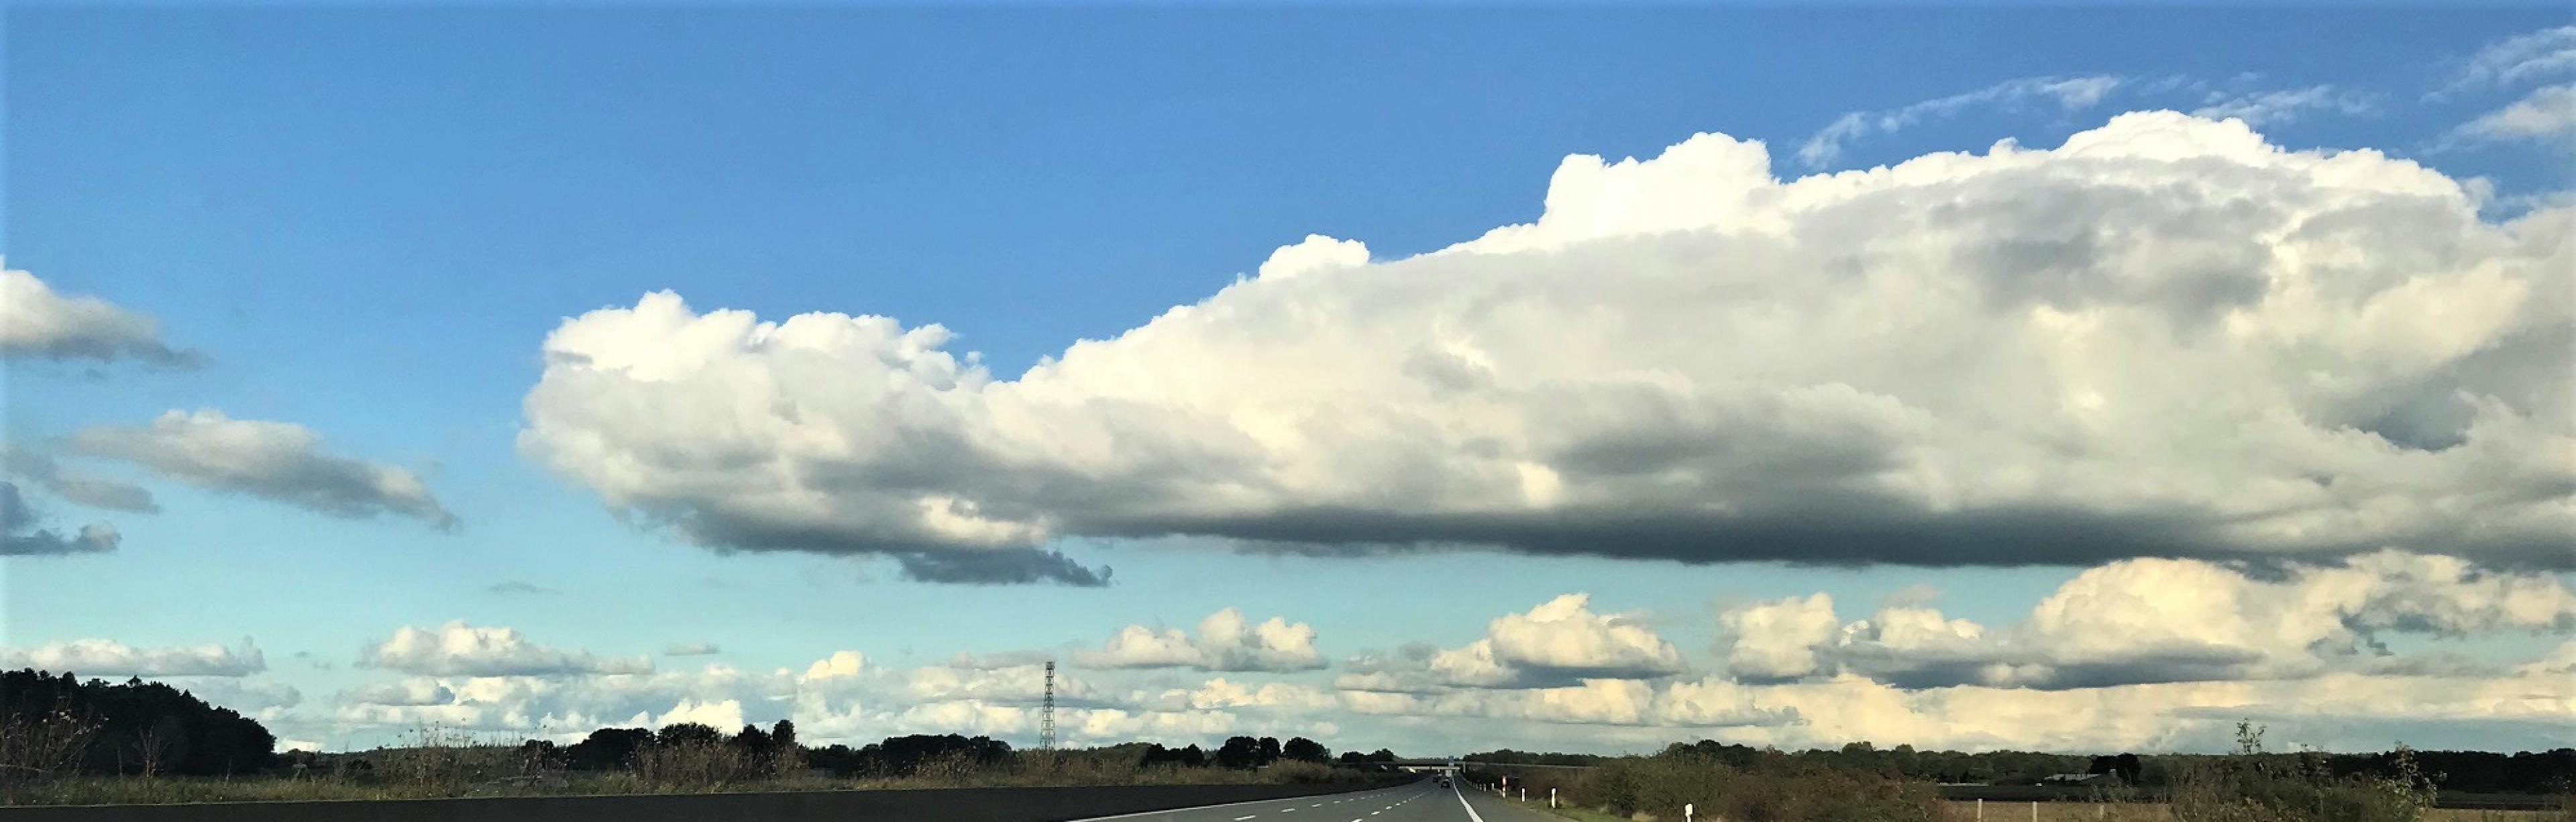 Über eine Landstraße ziehen Wolken hinweg.